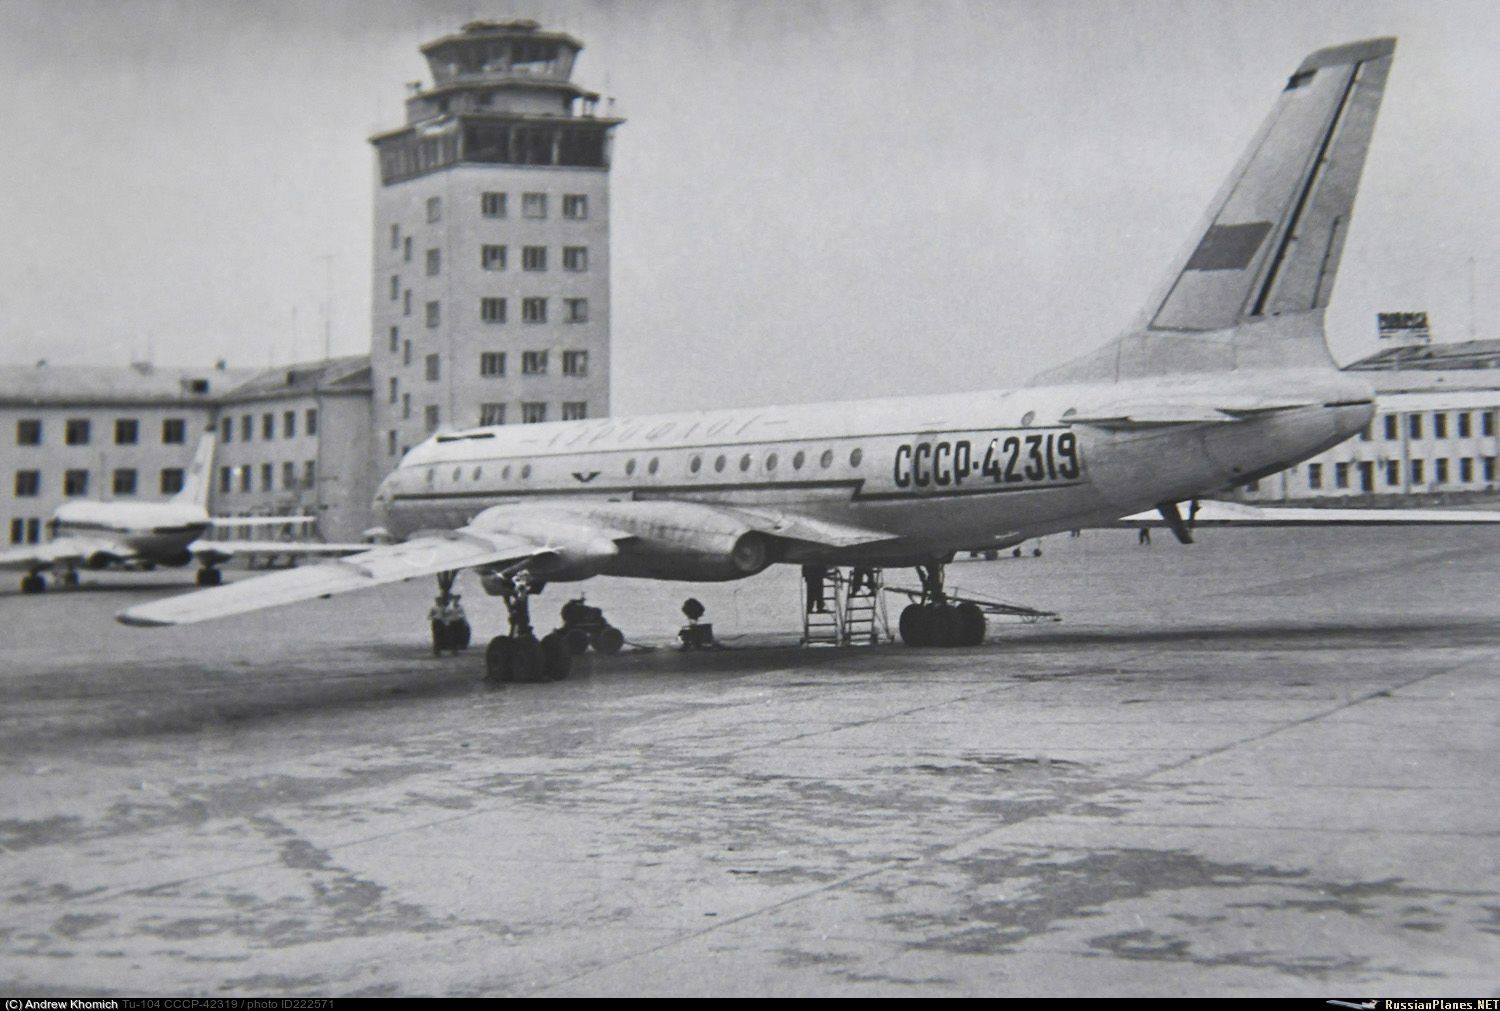 Ту-204 - фото, видео, характеристики самолета ту-204 и ту-214